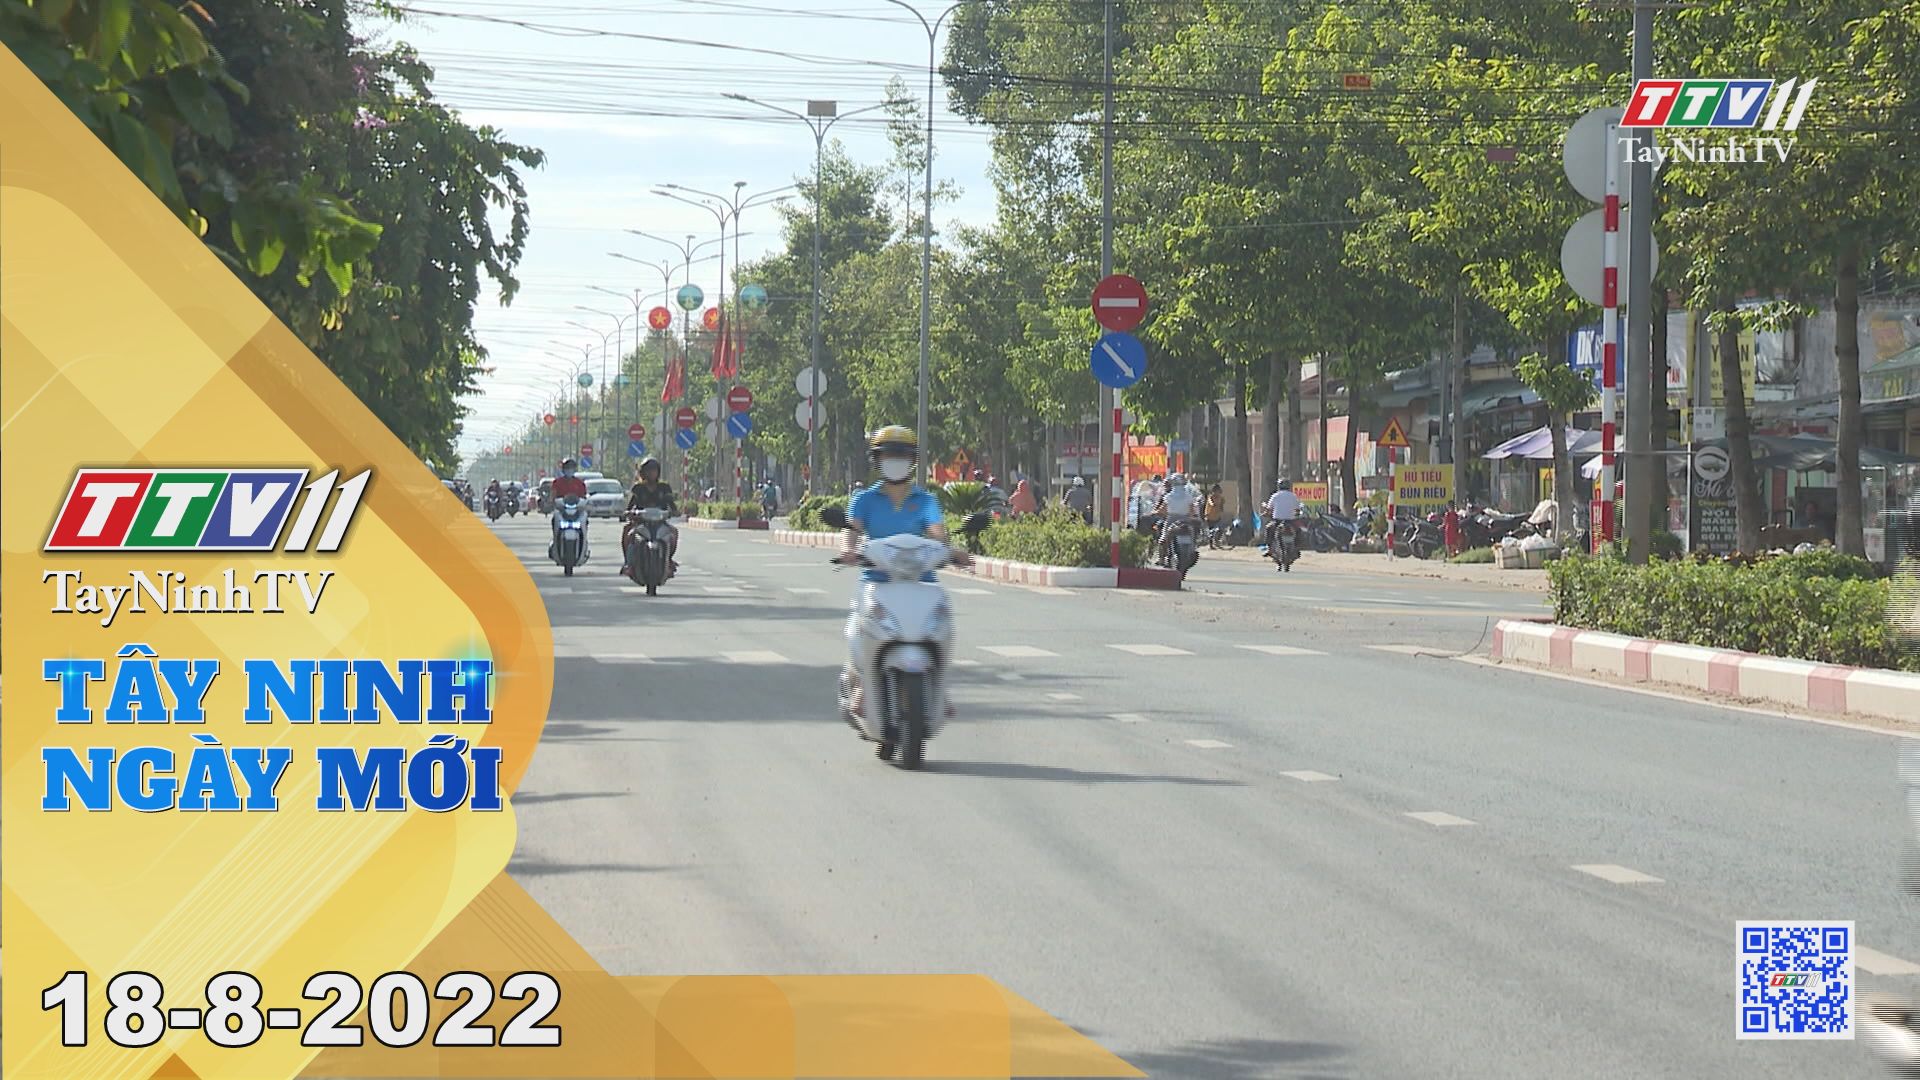 Tây Ninh ngày mới 18-8-2022 | Tin tức hôm nay | TayNinhTV